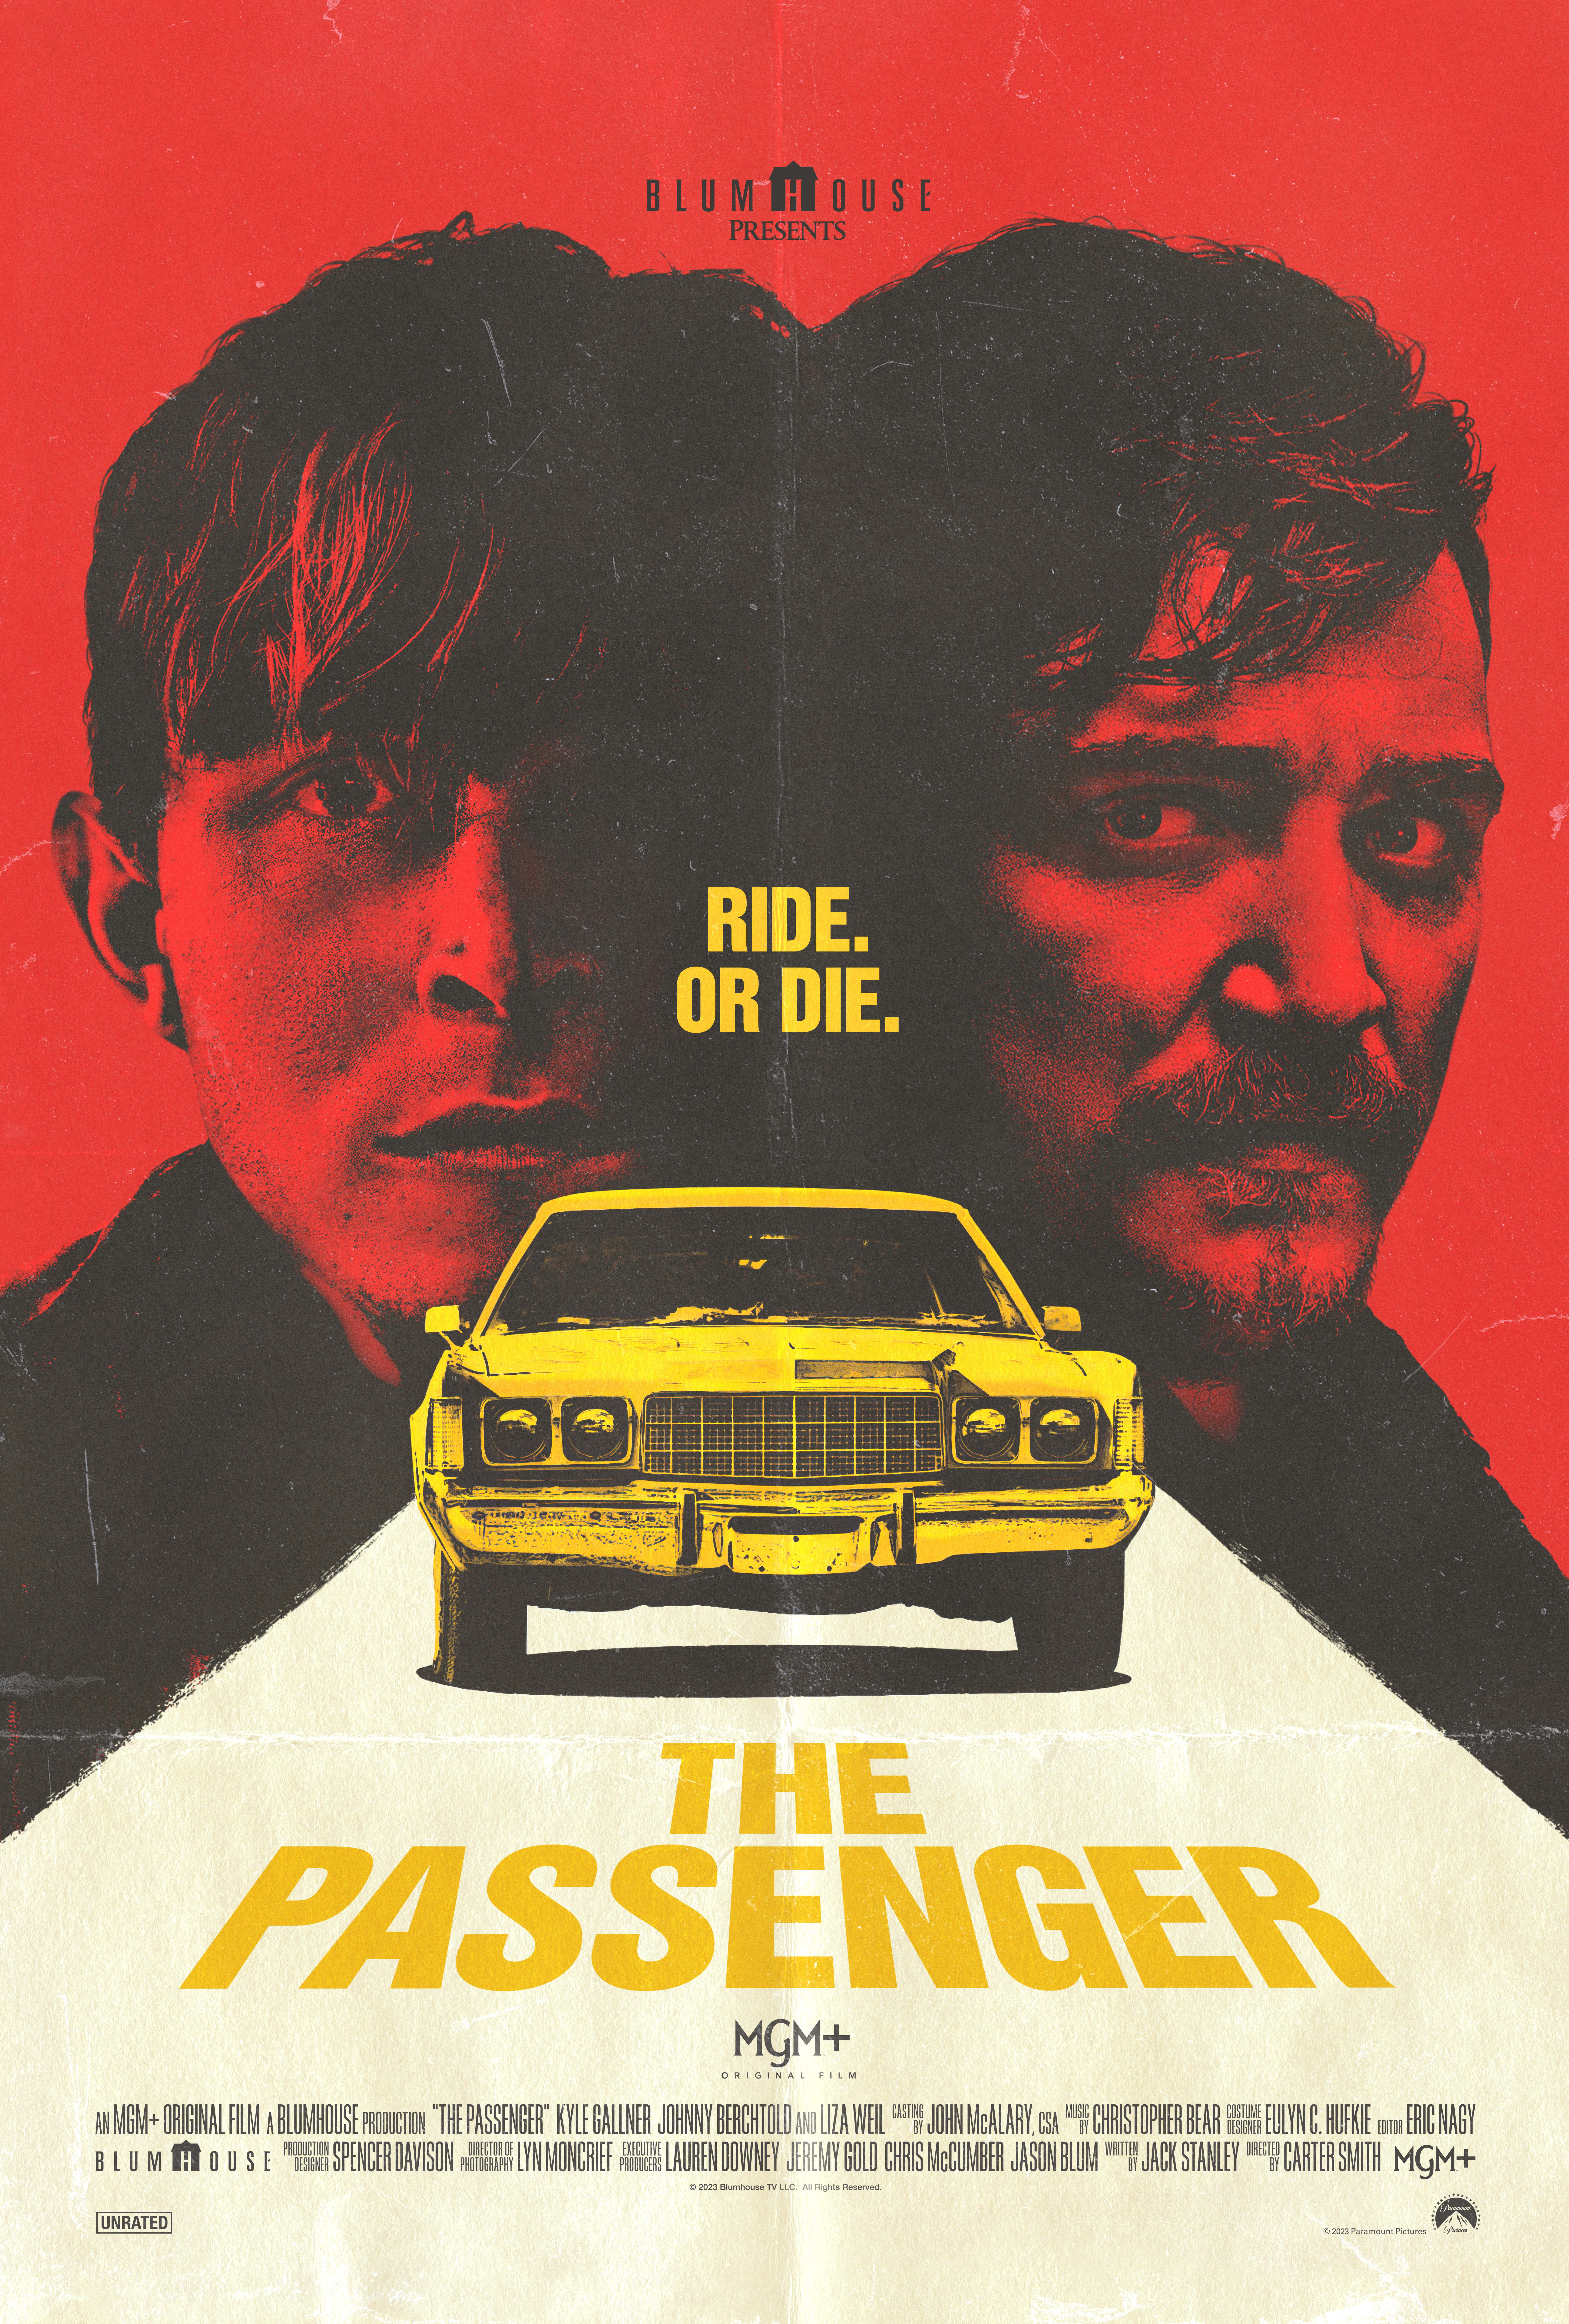 Poster for THE PASSENGER